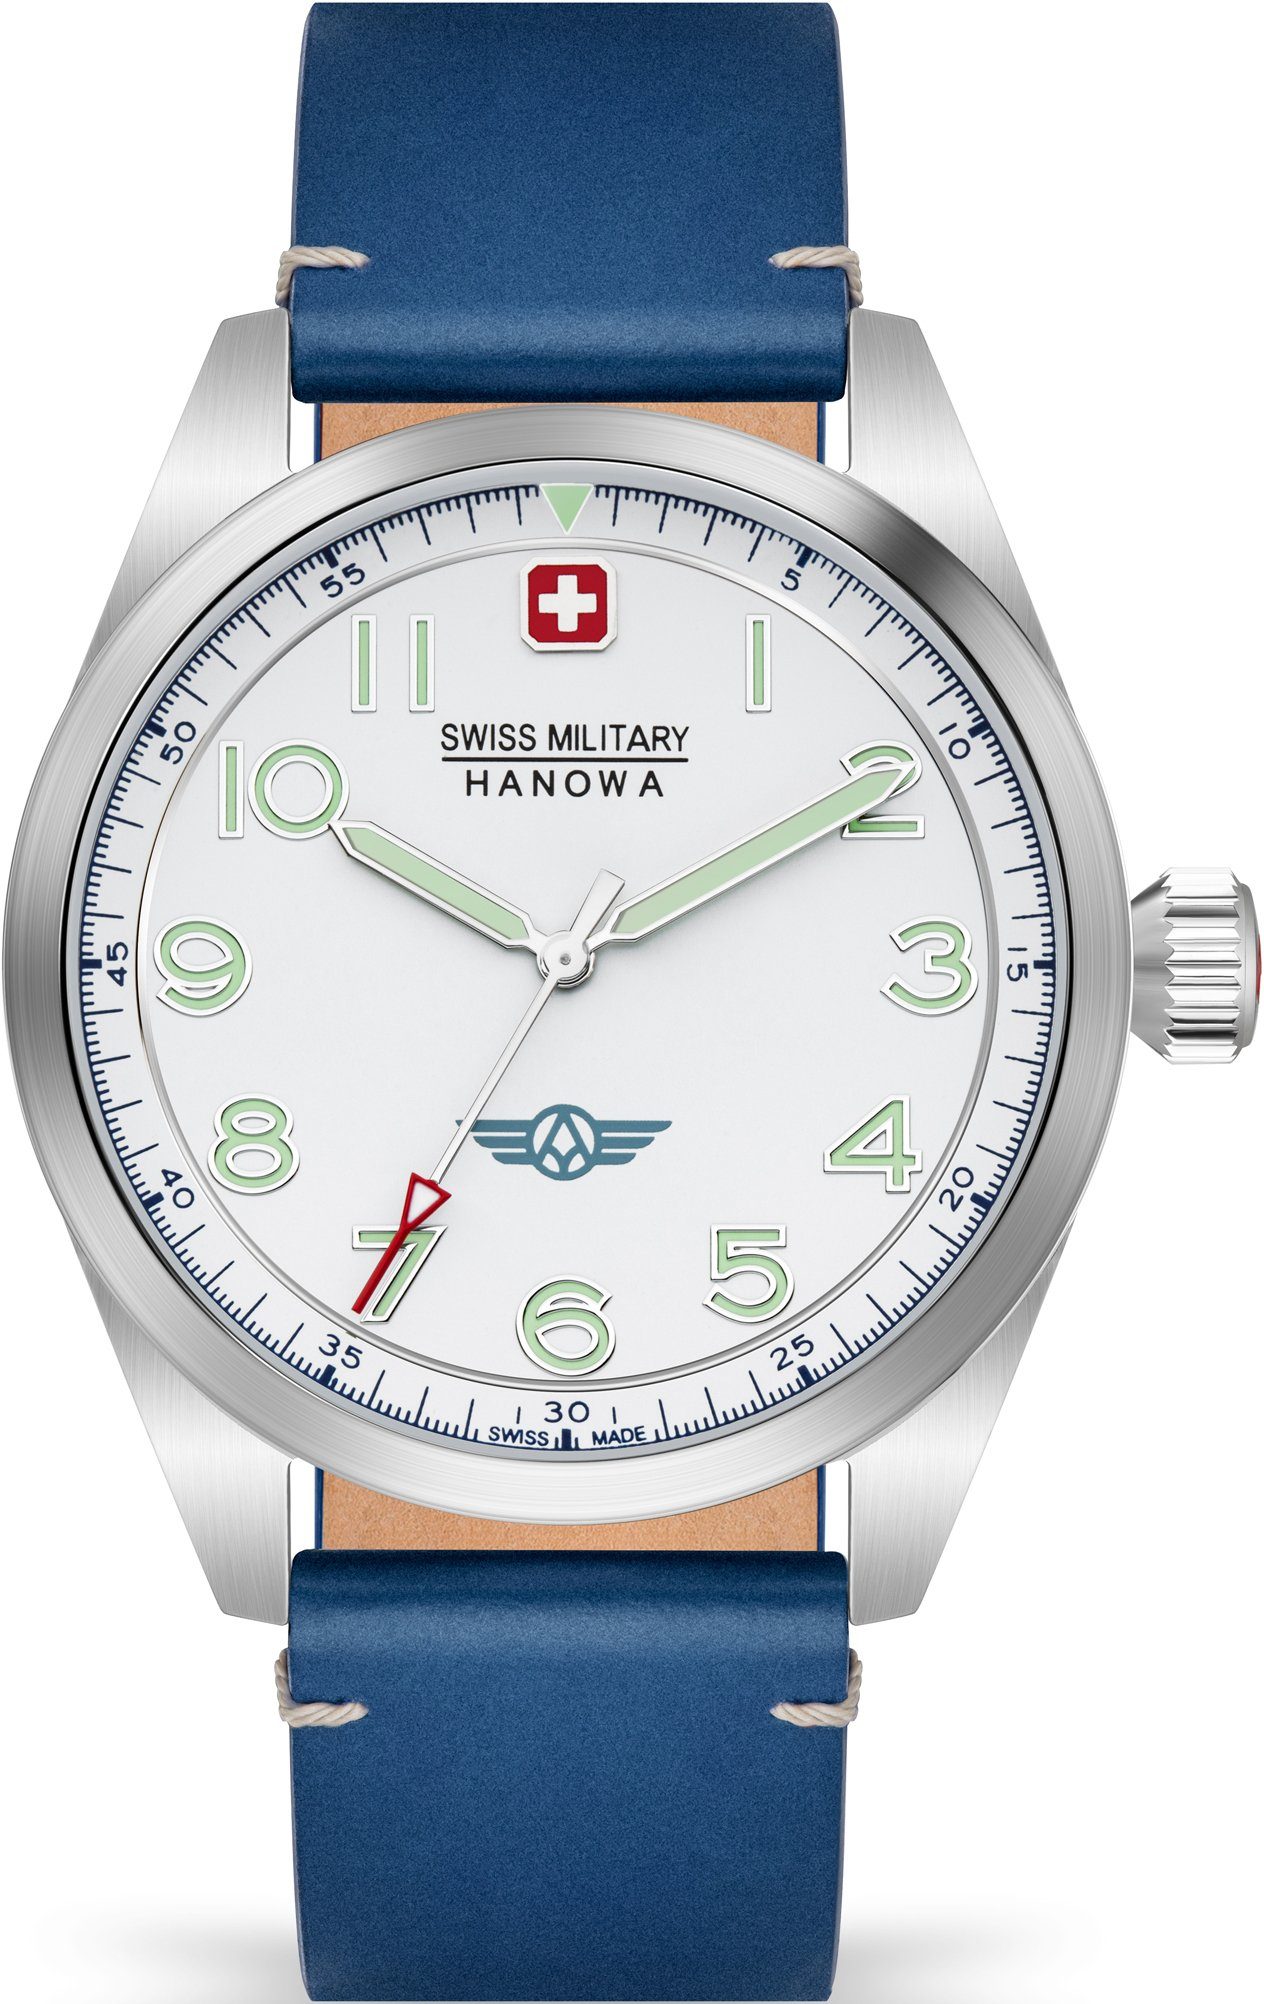 Swiss Military Hanowa Schweizer Uhr FALCON, SMWGA2100403 blau, weiß